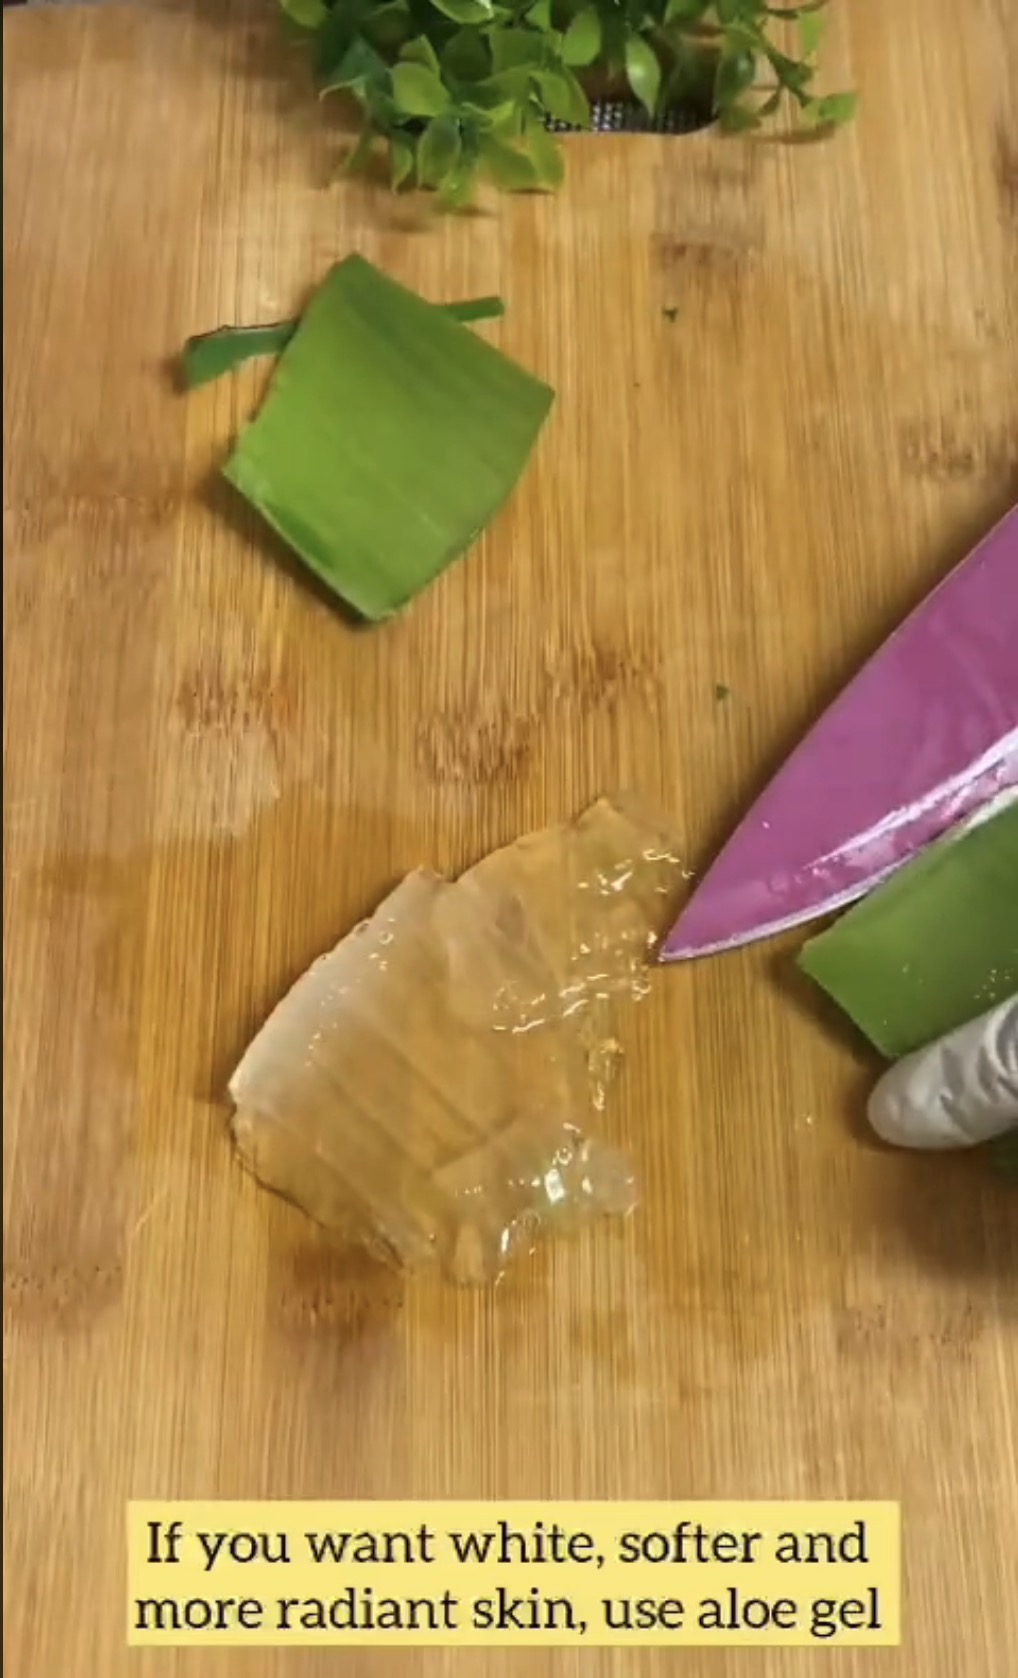 Meine DIY-Anti-Aging-Creme beseitigt Falten mit einer 2-Dollar-Zutat aus dem Supermarkt – Kollagen aus der Natur, OHNE GENEHMIGUNG VON https://www.tiktok.com/@lunasrasoighar/video/7272818969688444192